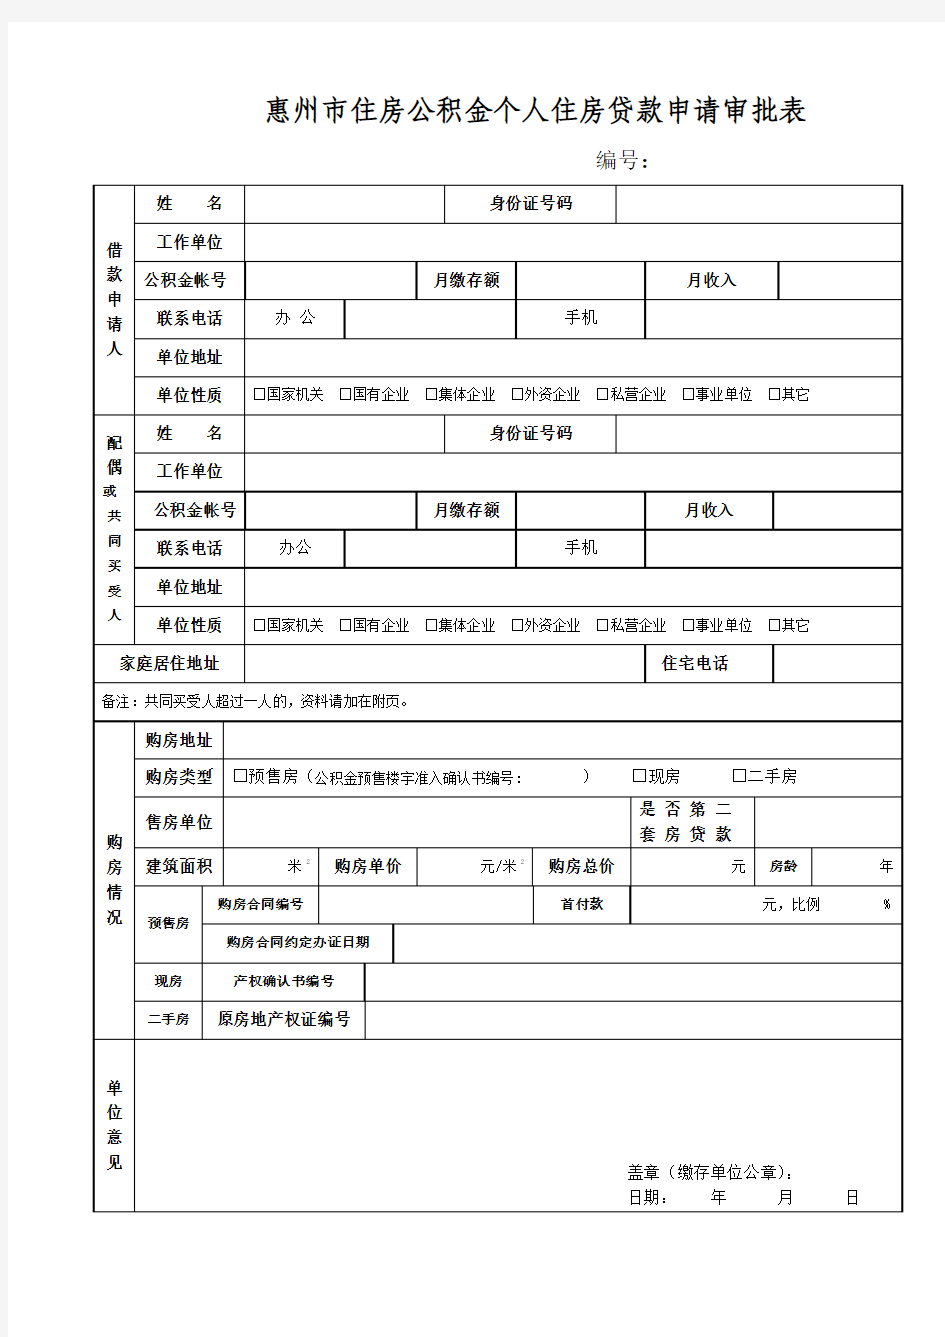 惠州市住房公积金个人住房贷款申请审批表、征信查询表、收入证明